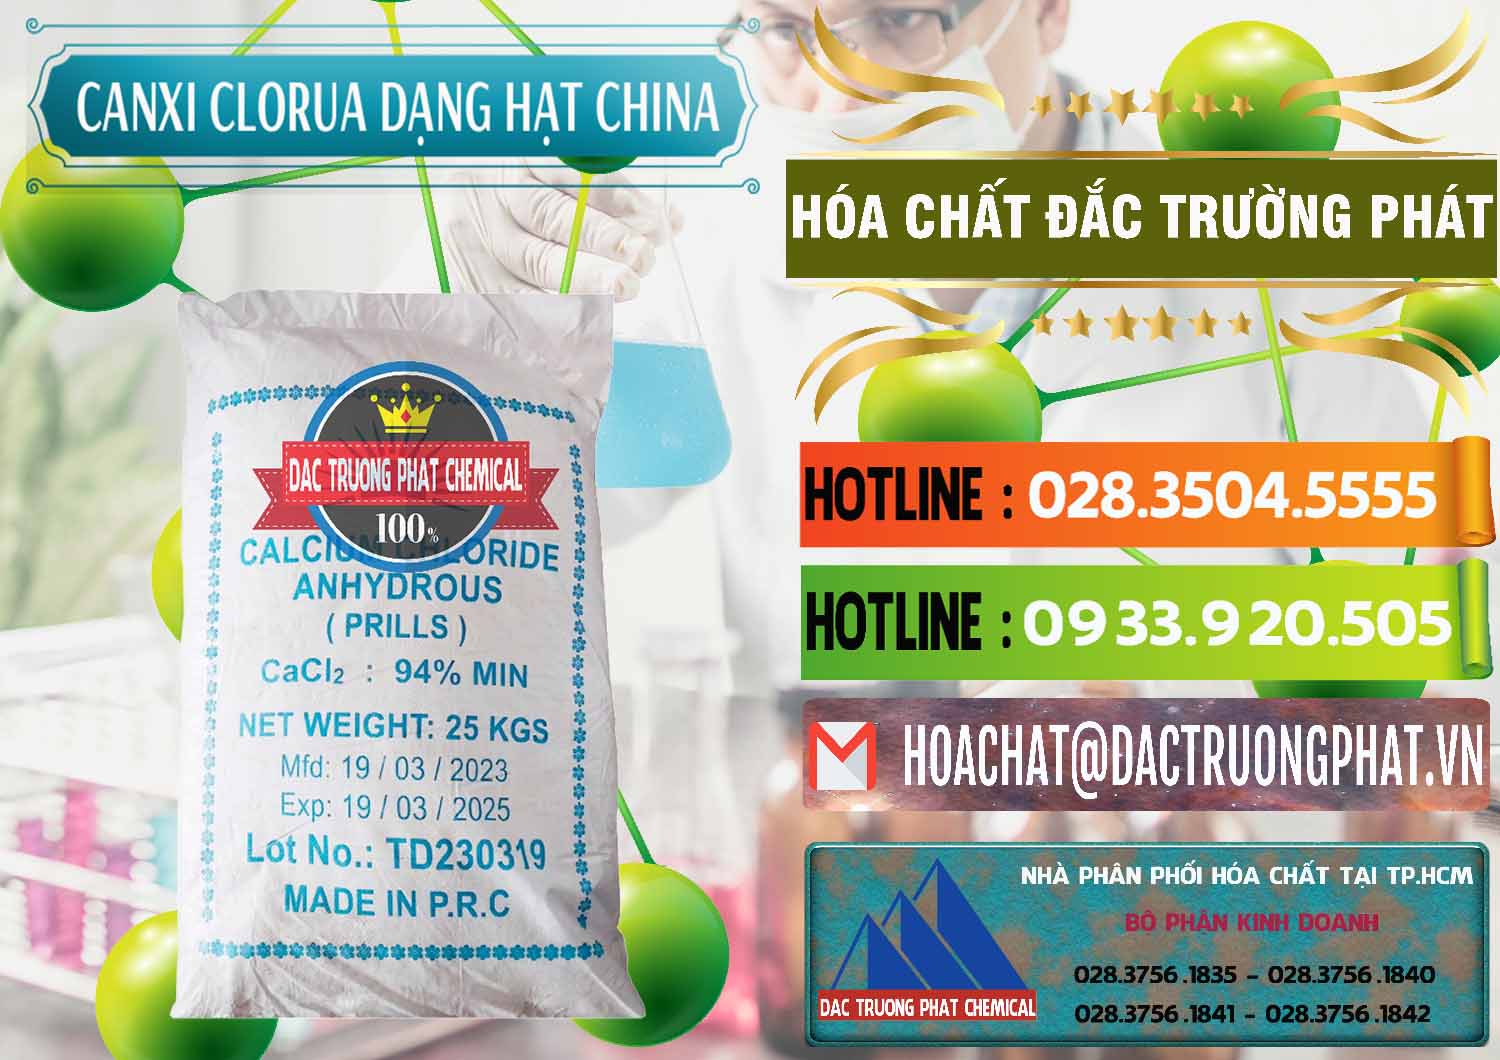 Cty cung cấp và bán CaCl2 – Canxi Clorua 94% Dạng Hạt Trung Quốc China - 0373 - Cty cung cấp & nhập khẩu hóa chất tại TP.HCM - cungcaphoachat.com.vn